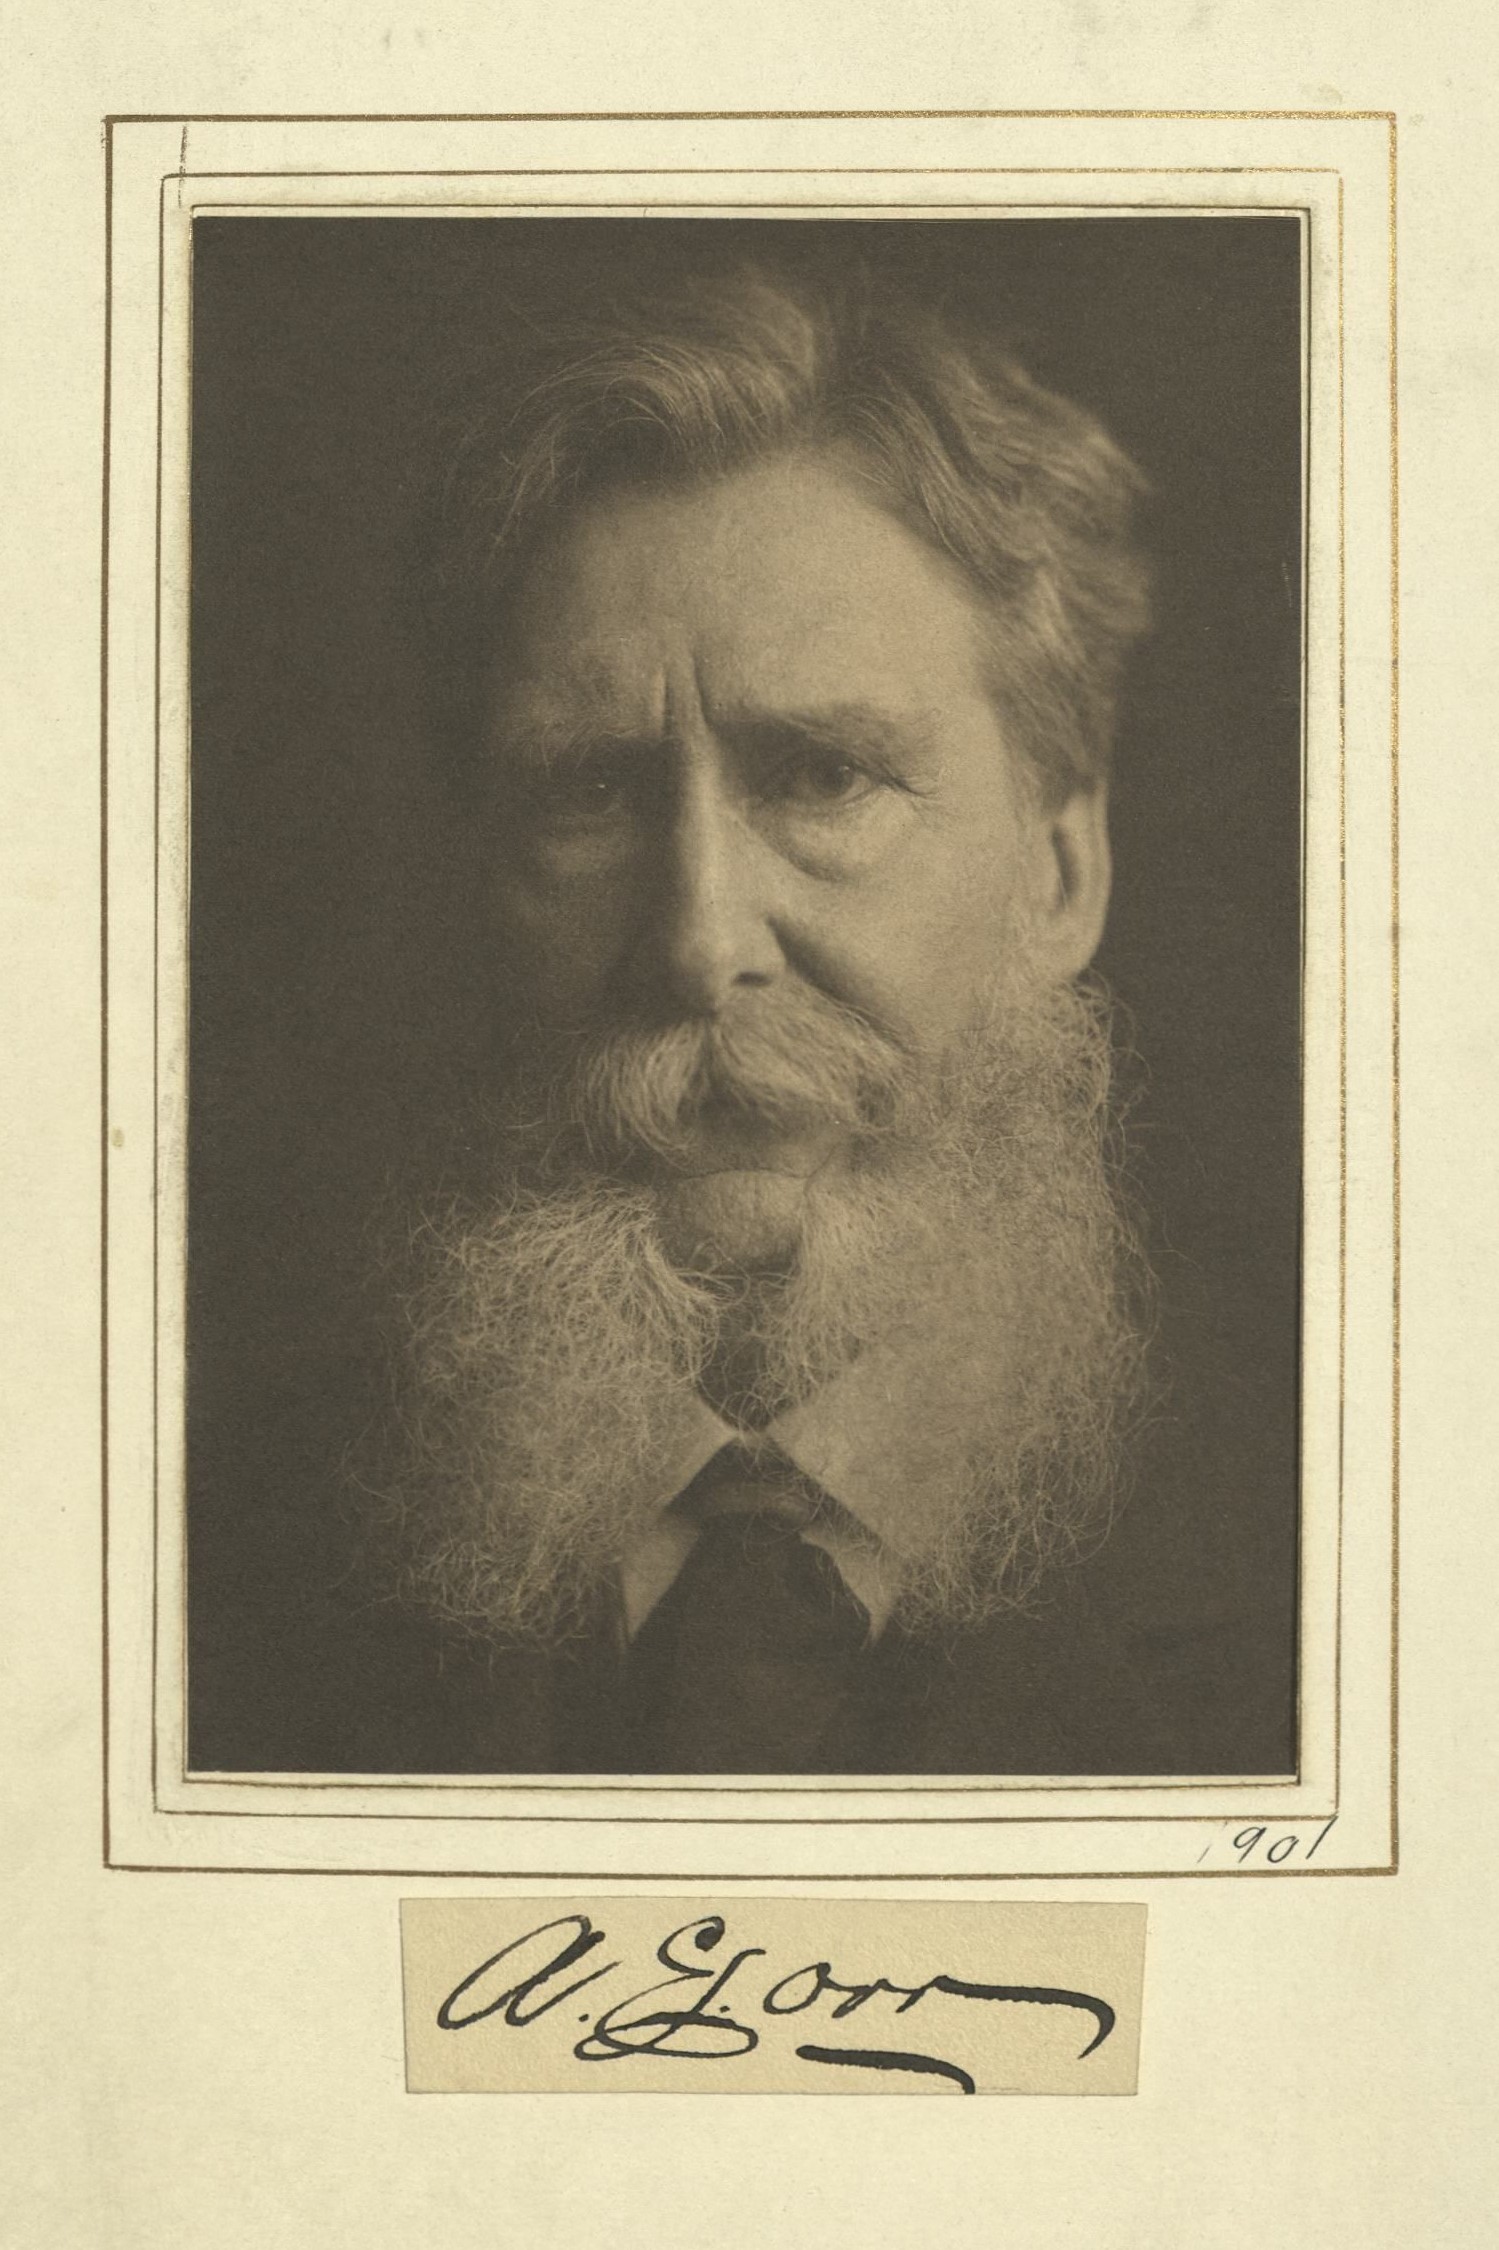 Member portrait of Alexander E. Orr